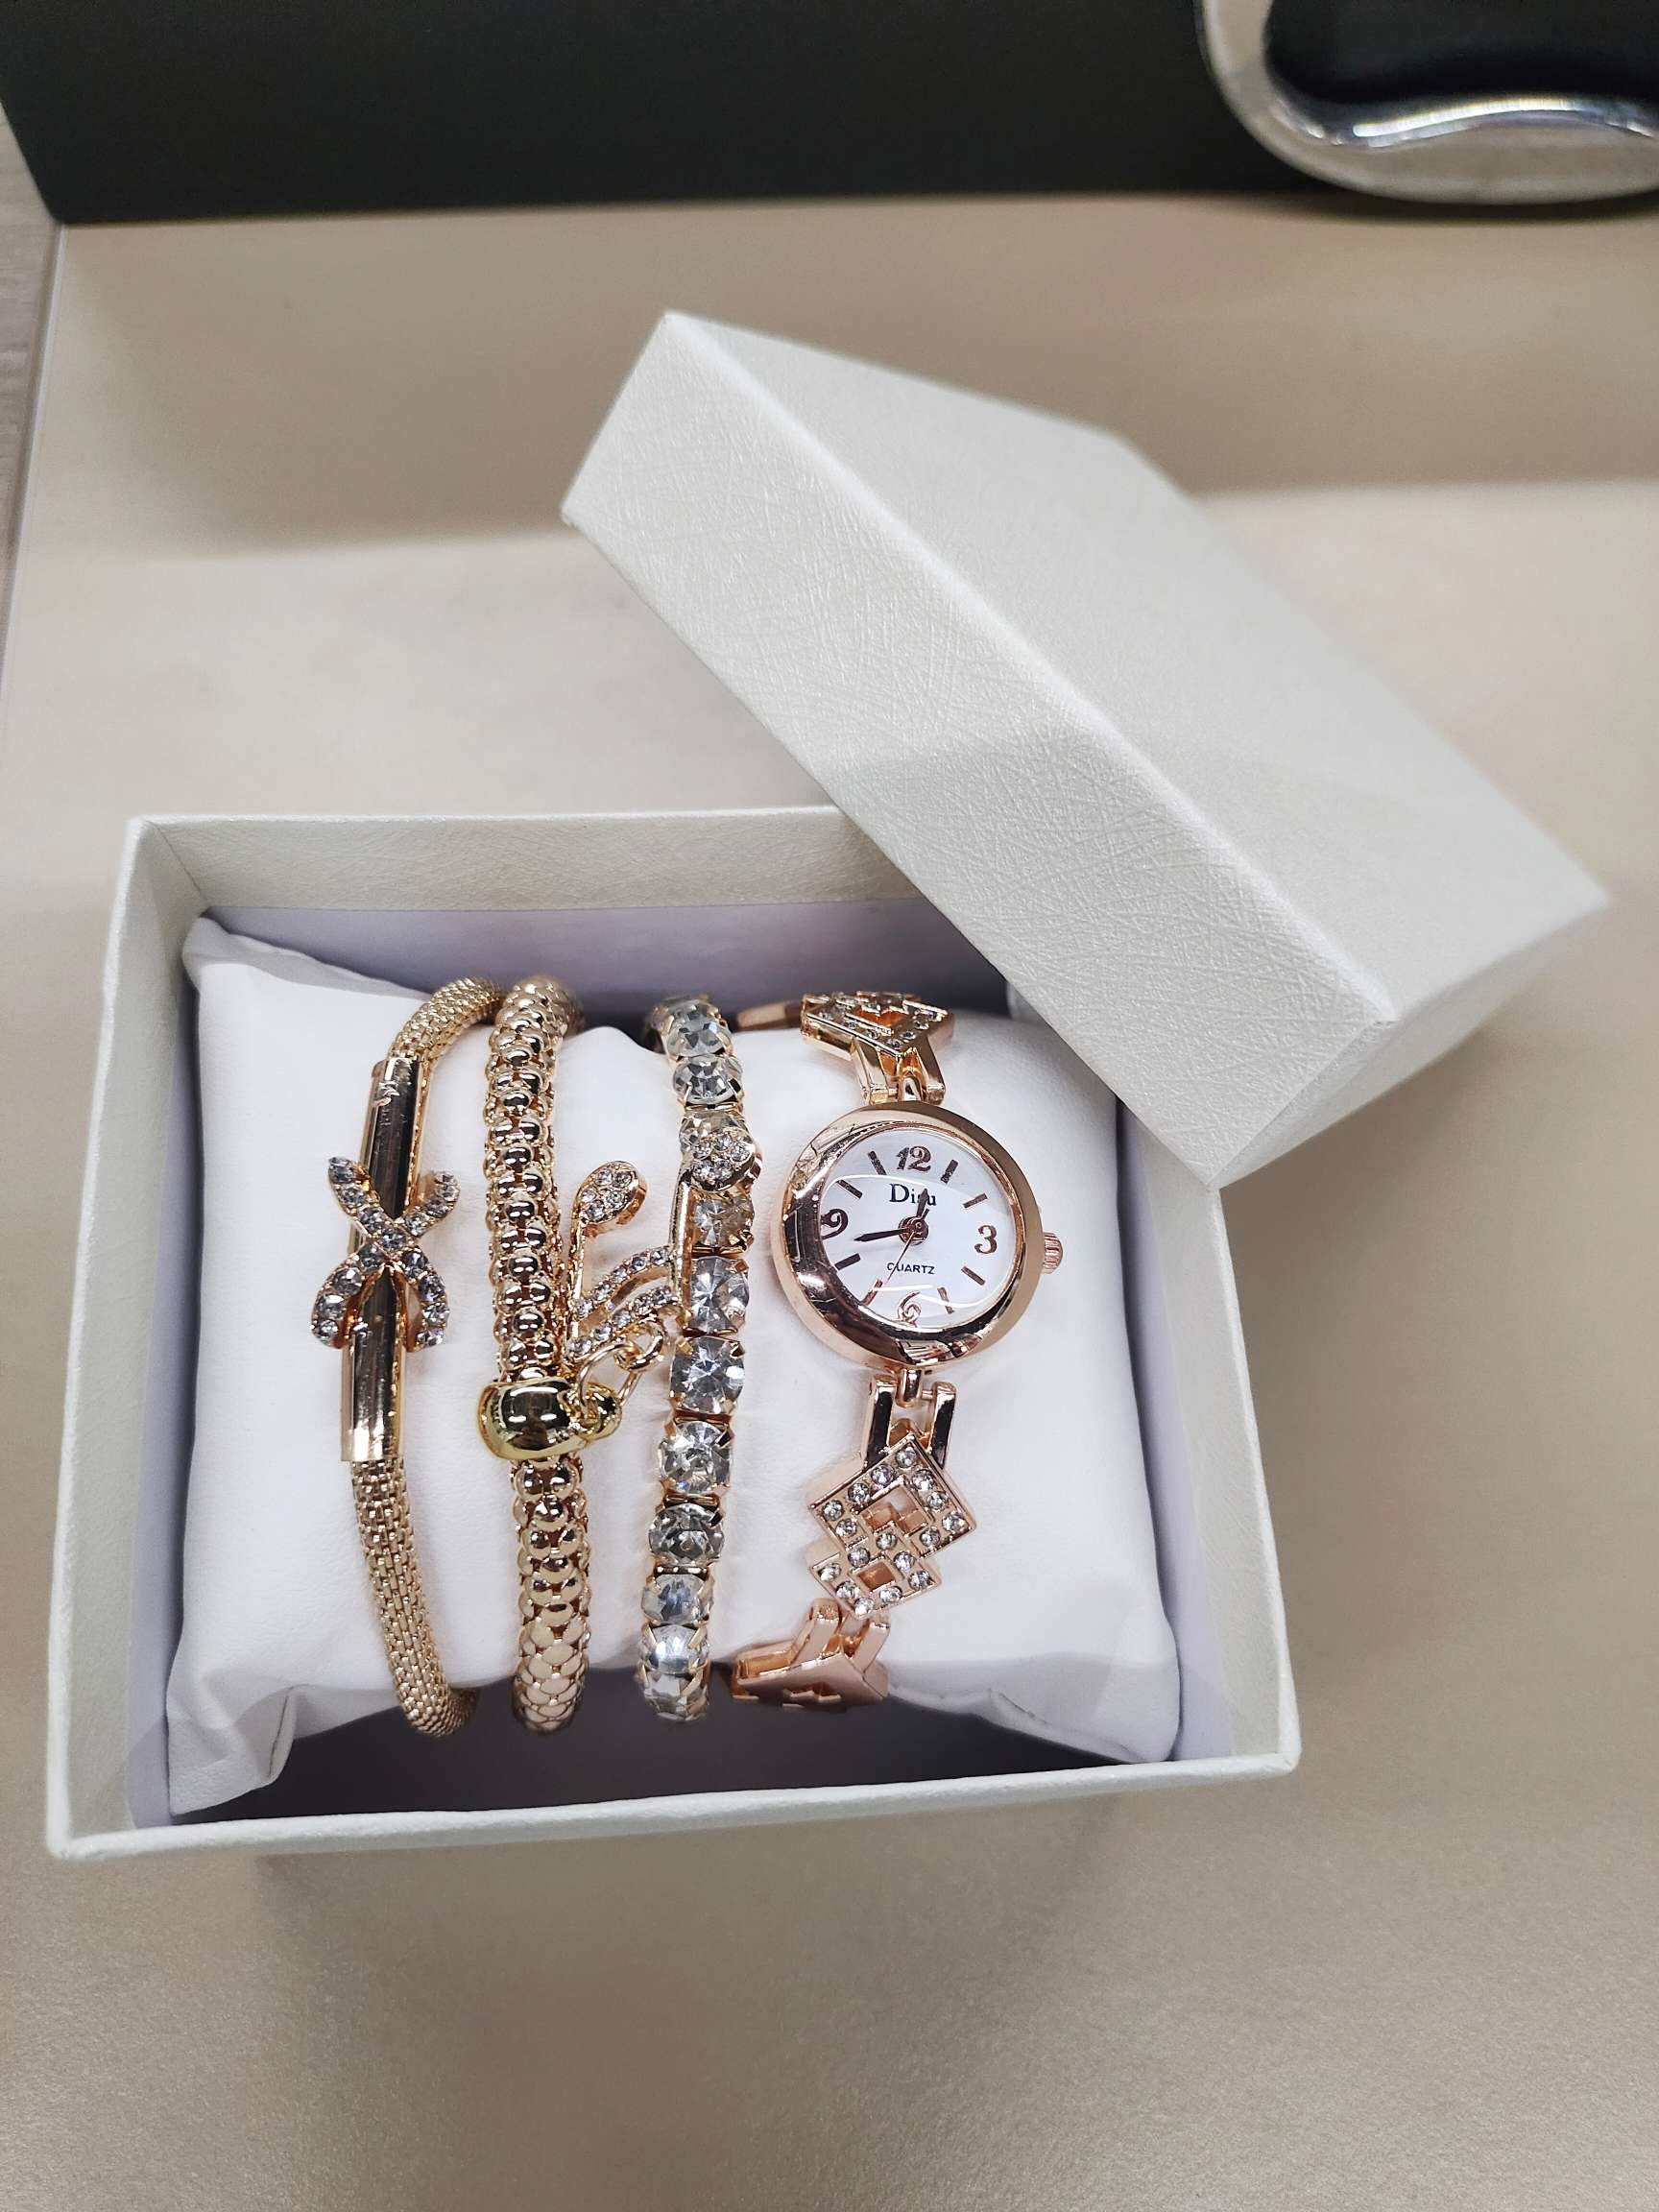 新款热销手链表时尚爆款手表手镯礼品4件套饰品套装女士石英手表